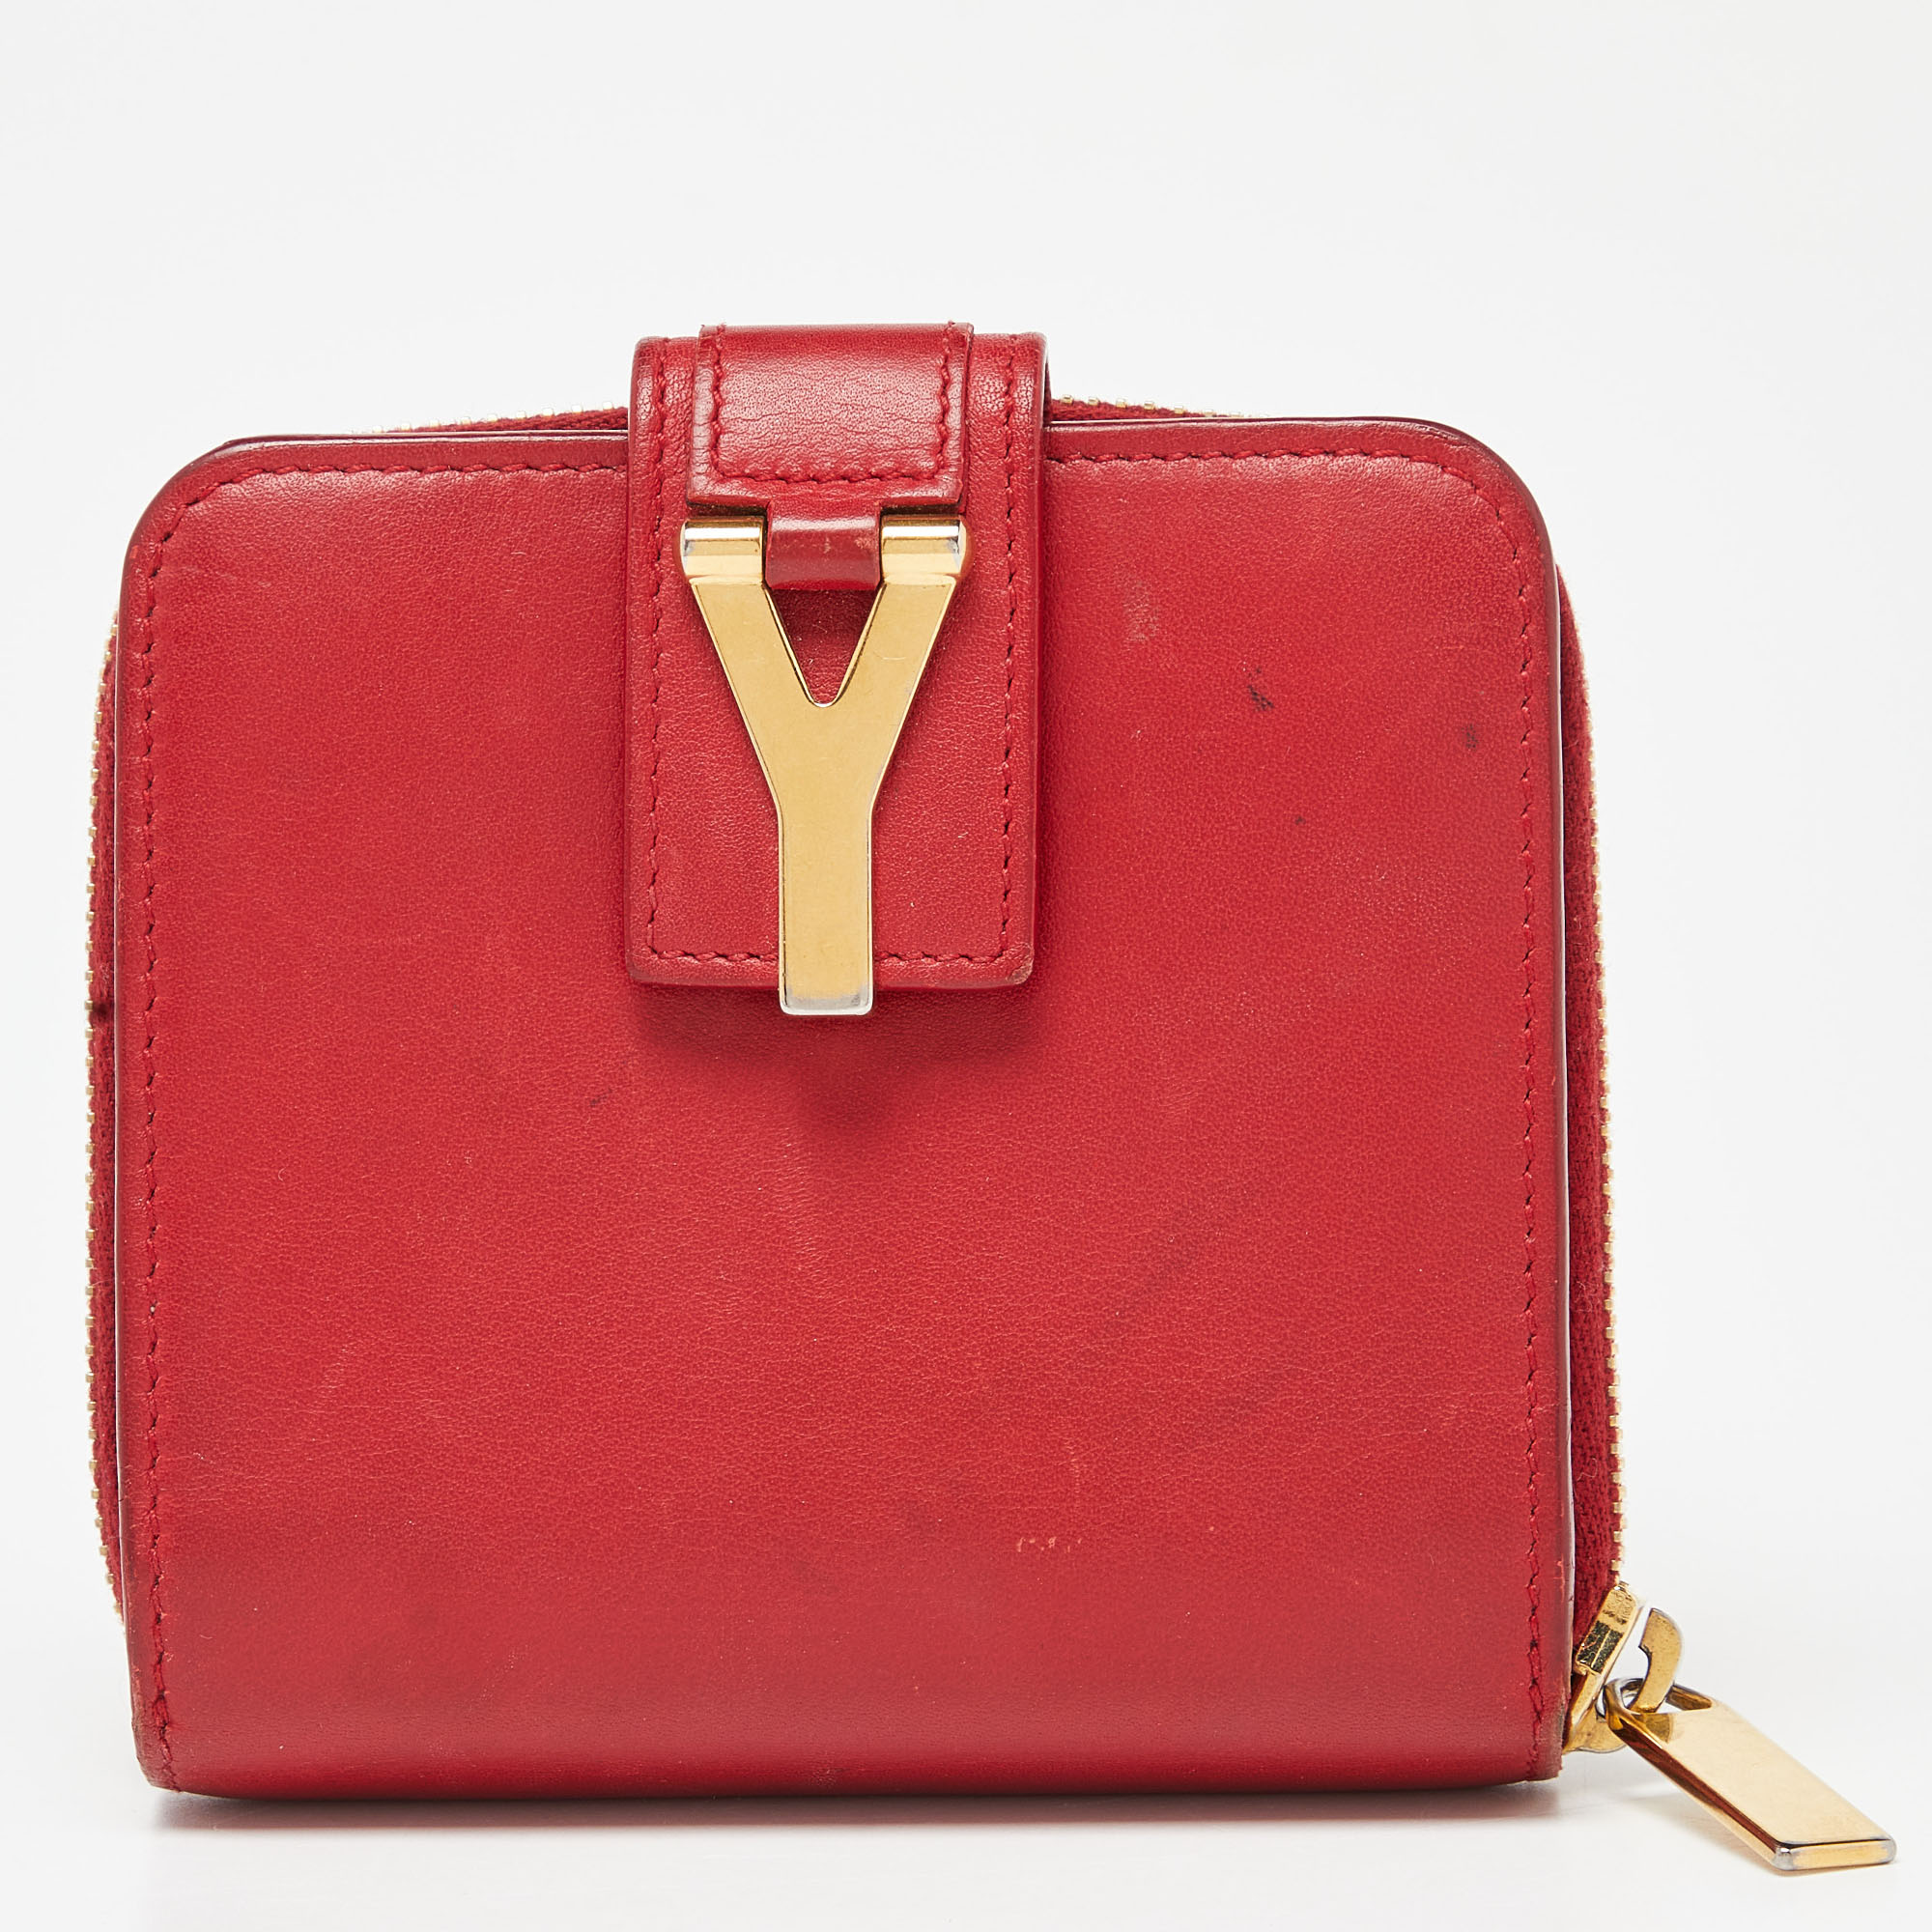 Saint laurent paris saint laurent red leather y line zip compact wallet